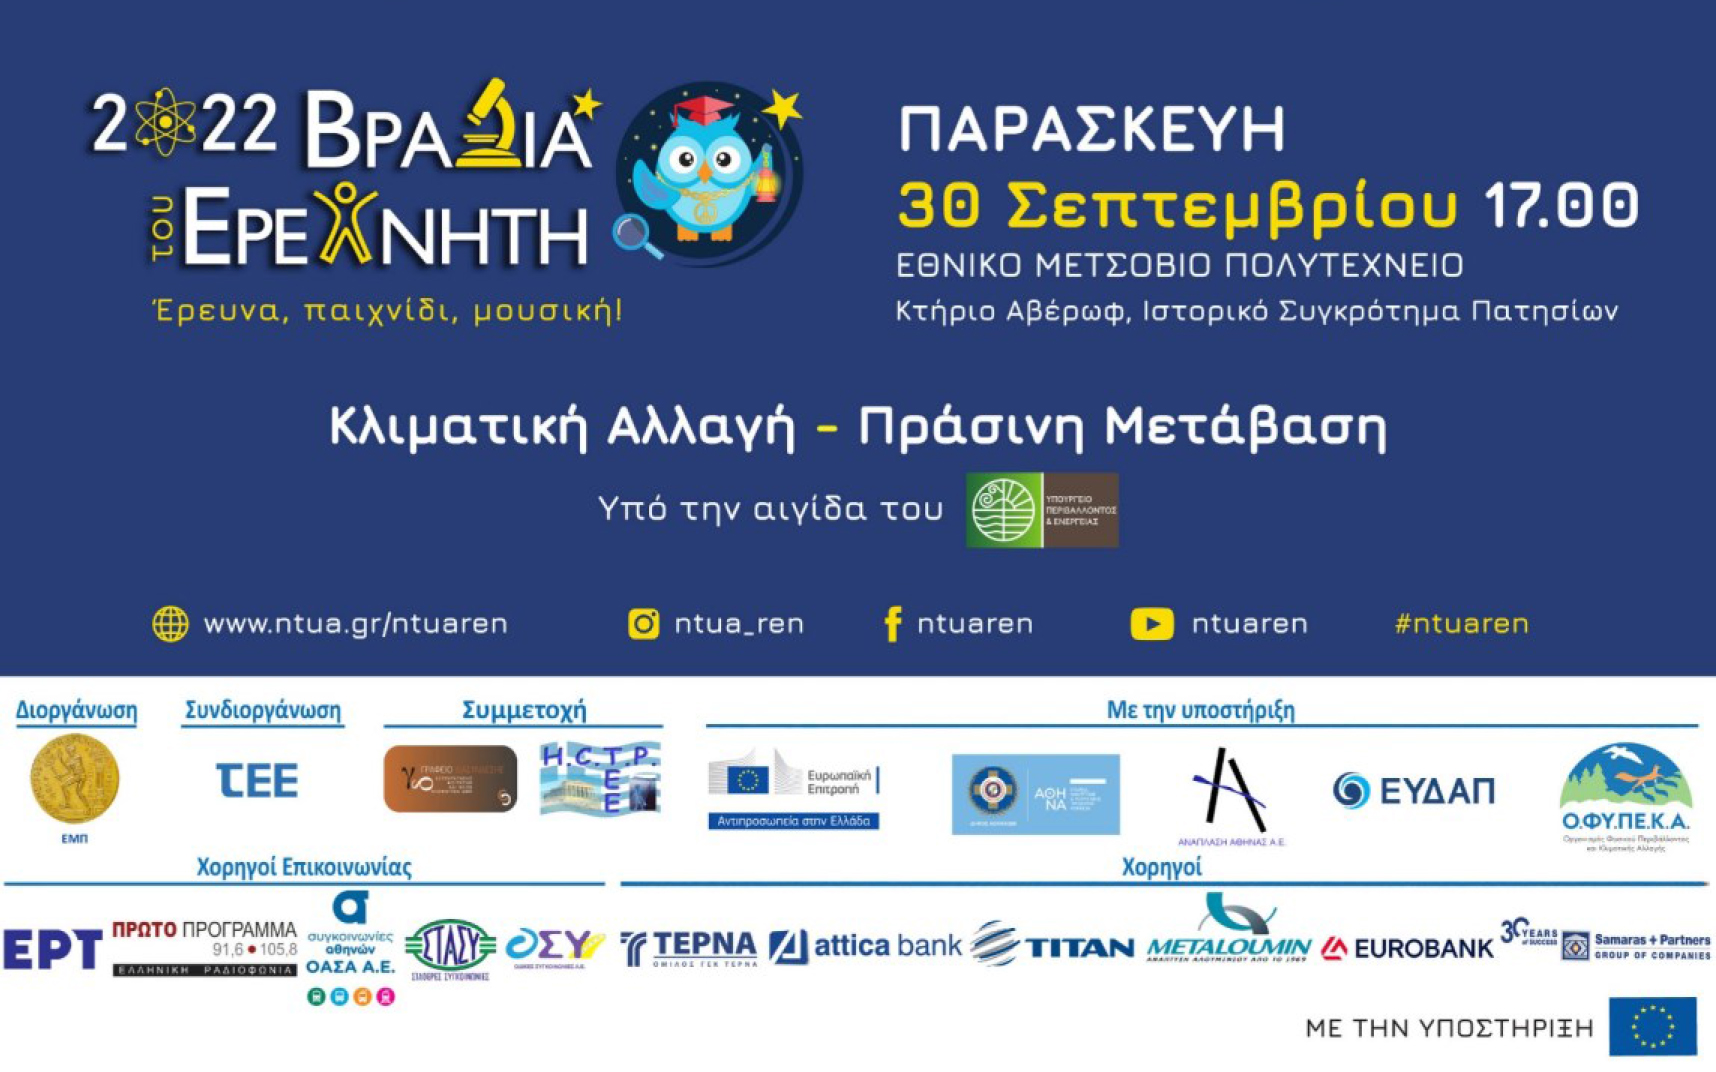 More information about "Η Βραδιά του Ερευνητή 2022 στο ΕΜΠ"